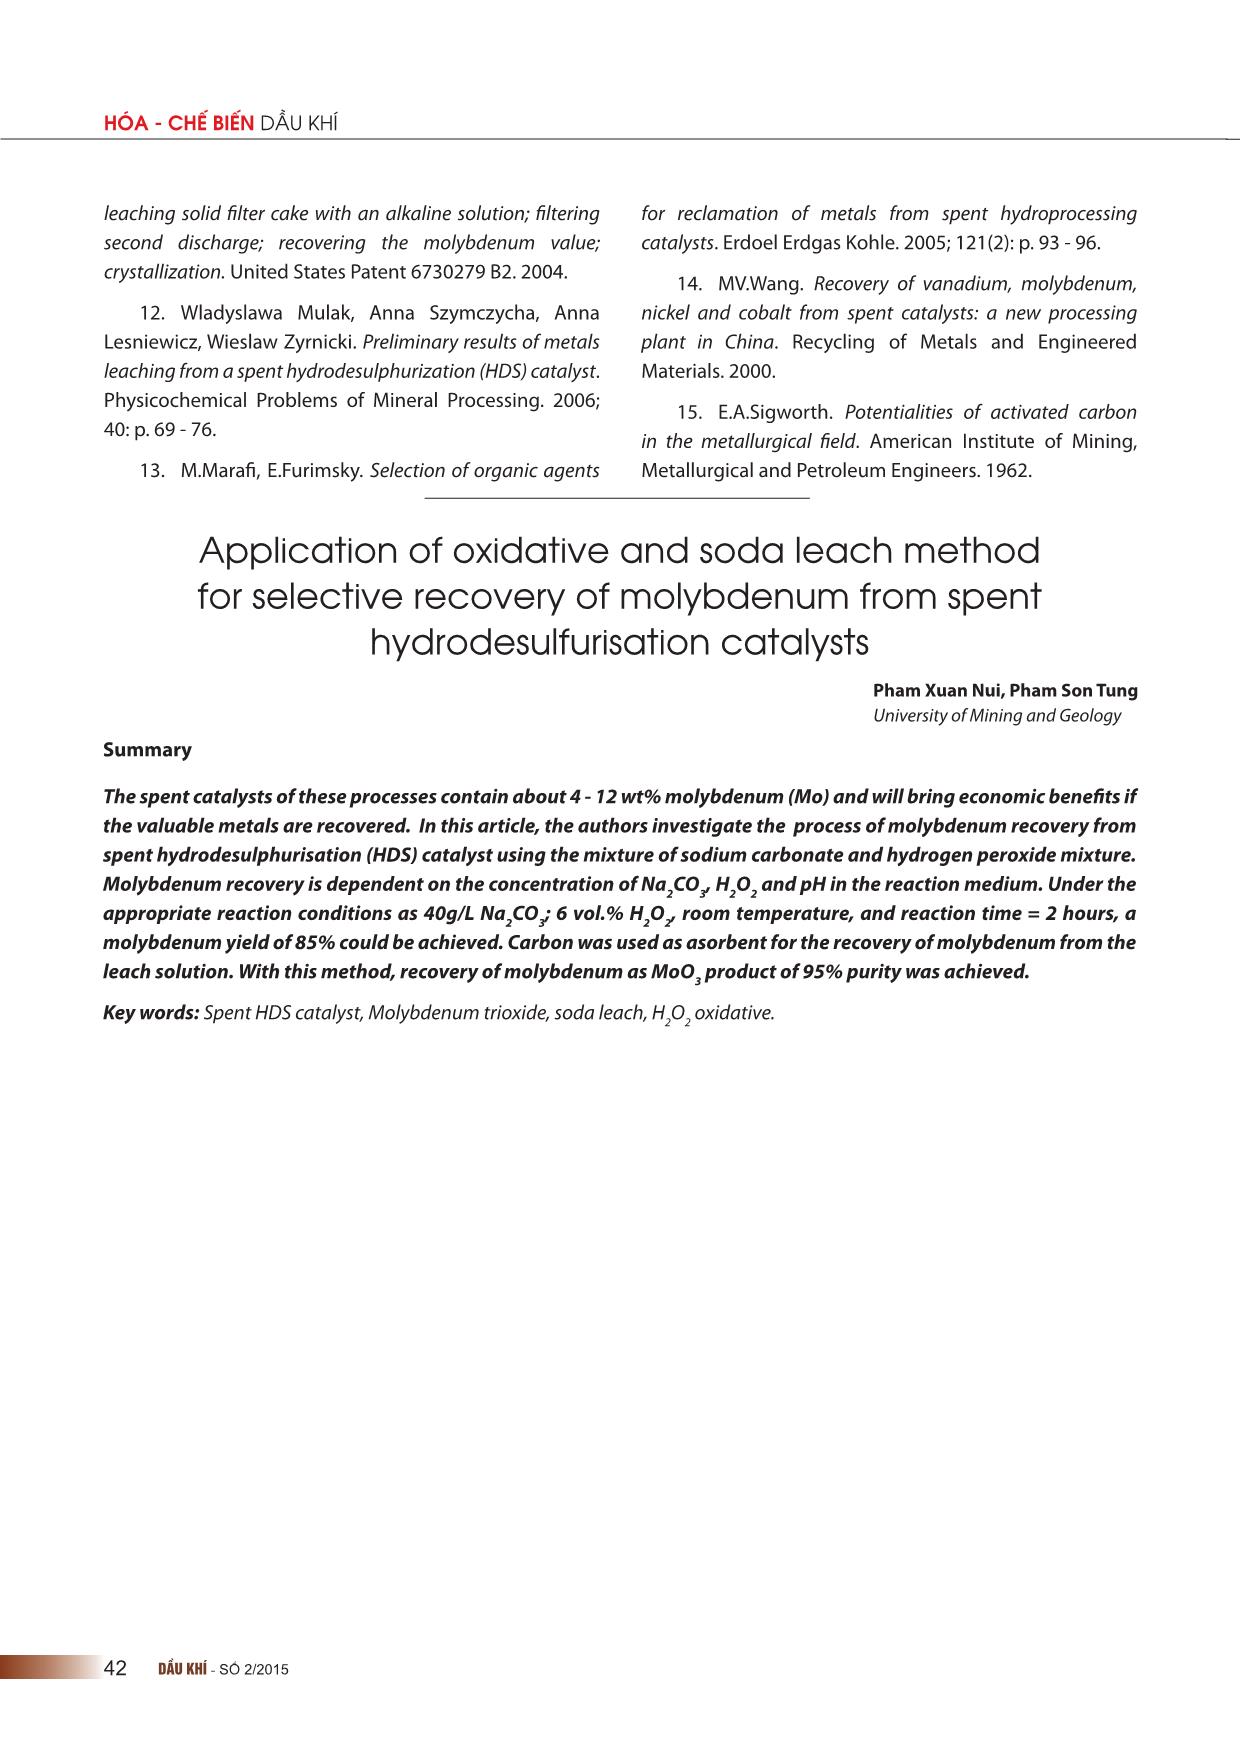 Ứng dụng phương pháp ngâm chiết soda và tác nhân oxy hóa để thu hồi chọn lọc molybdenum từ xúc tác thải của quá trình hydrodesulphur hóa trang 7